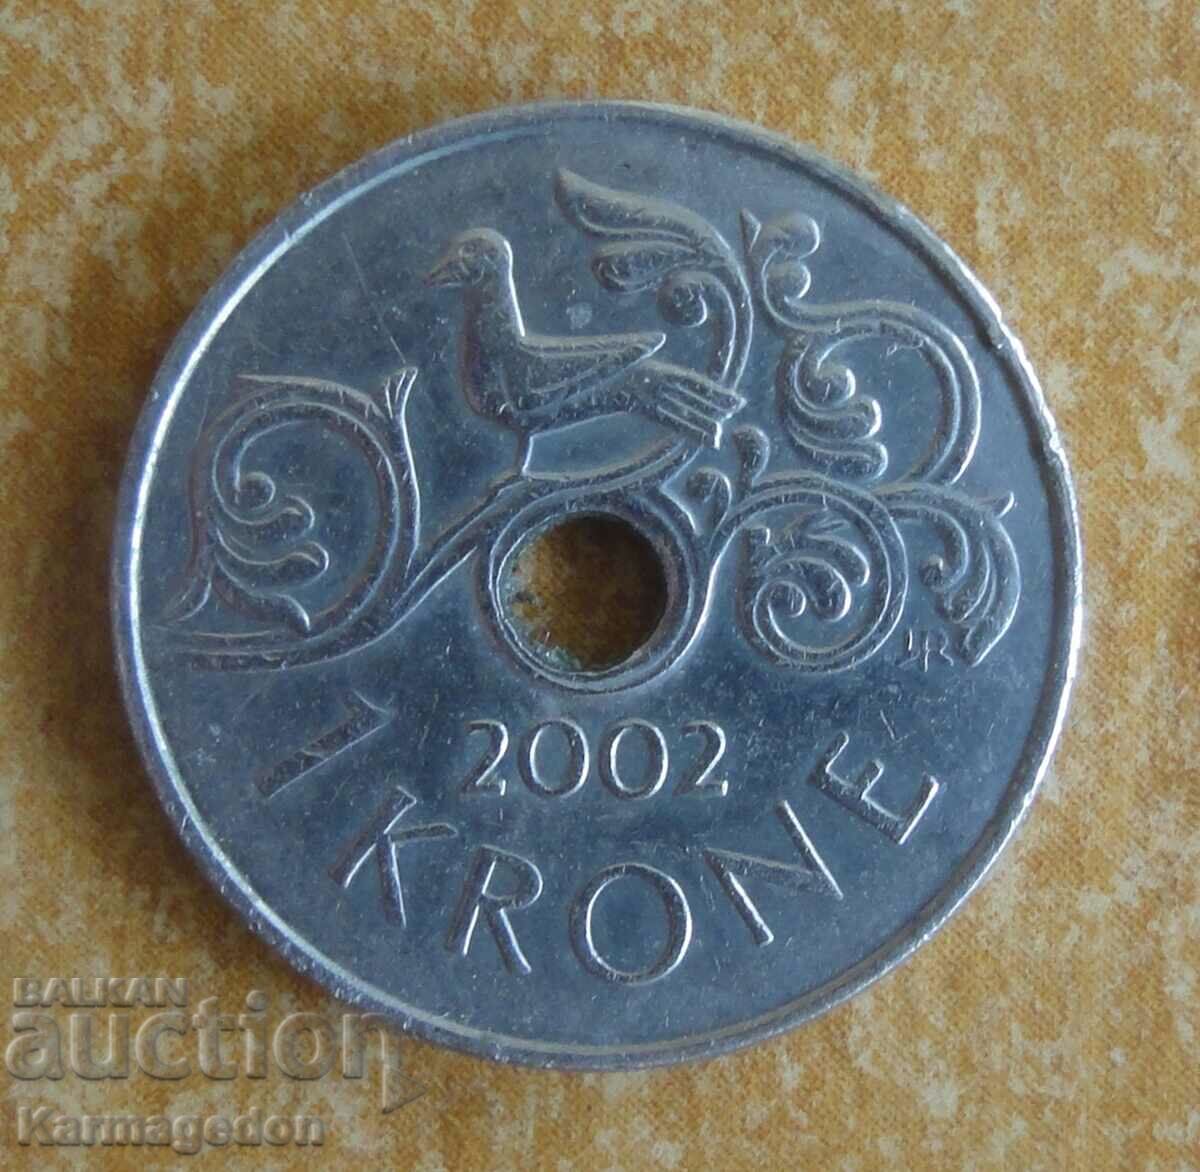 1 kroner 2002 - Norway